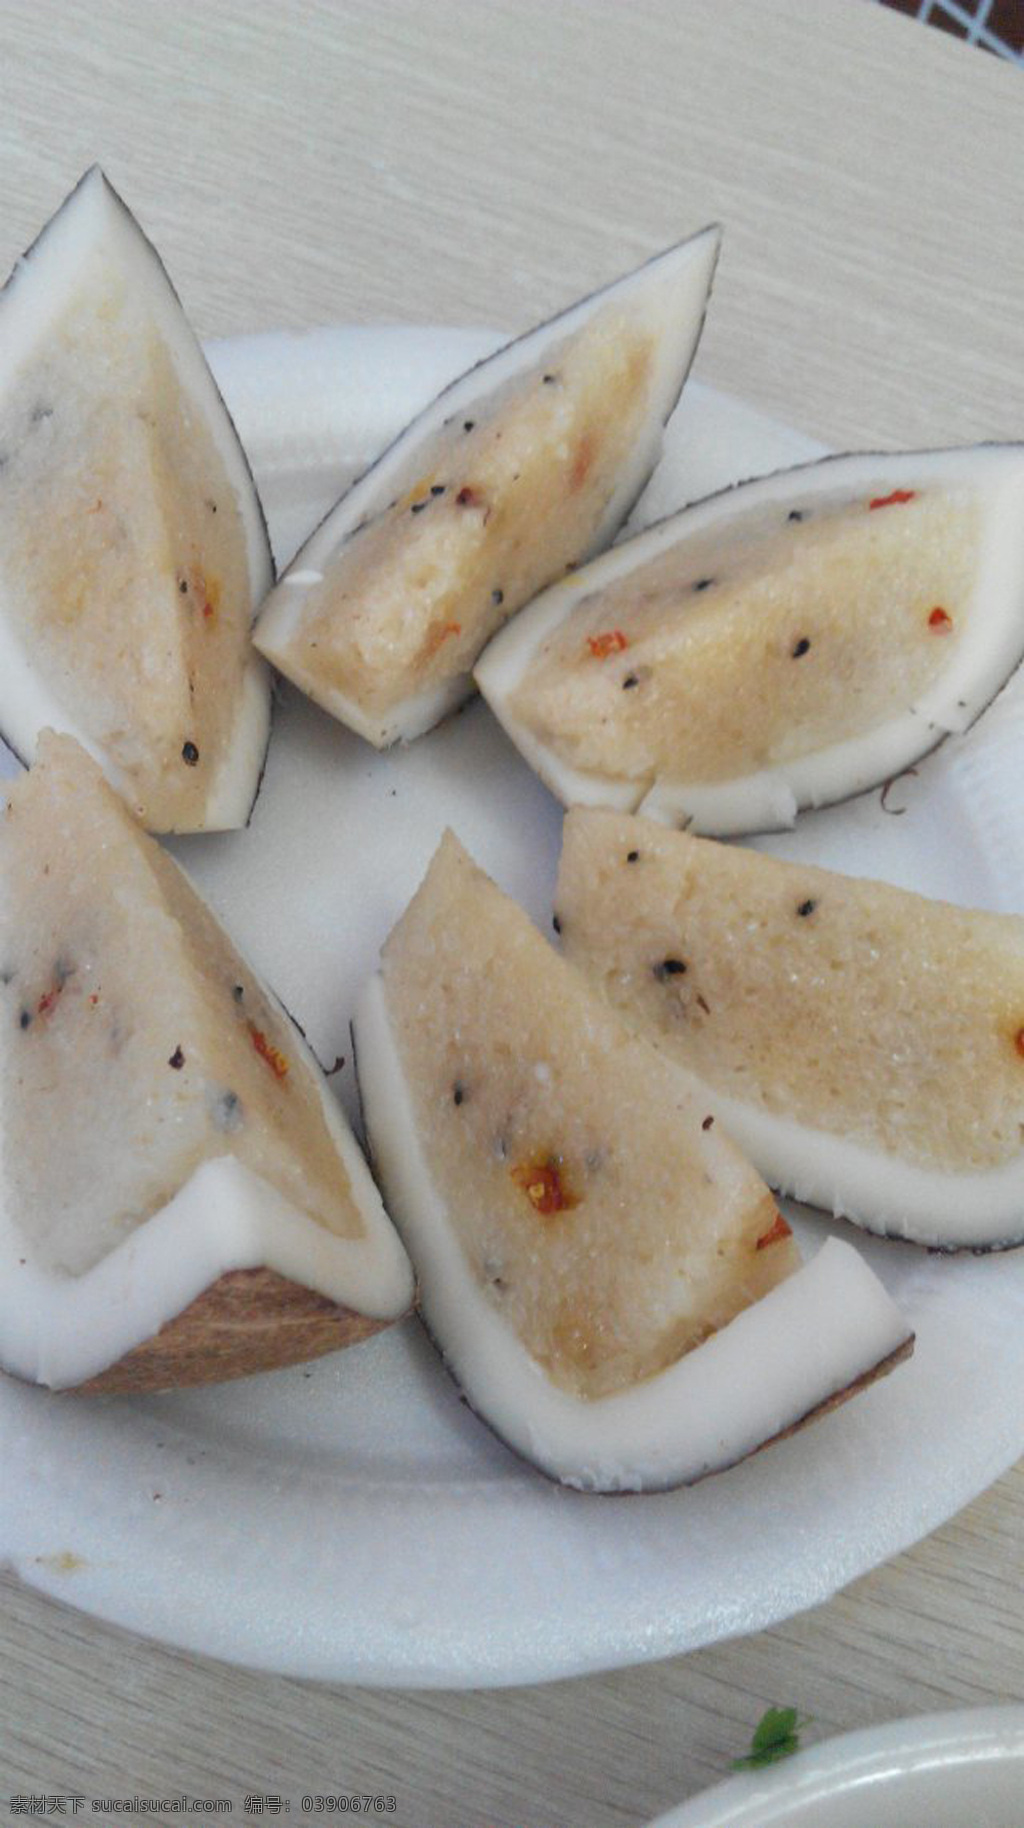 椰子饭 枸杞 海南特产 海南特色 糯米饭 椰子 椰子香 传统美食 餐饮美食 灰色